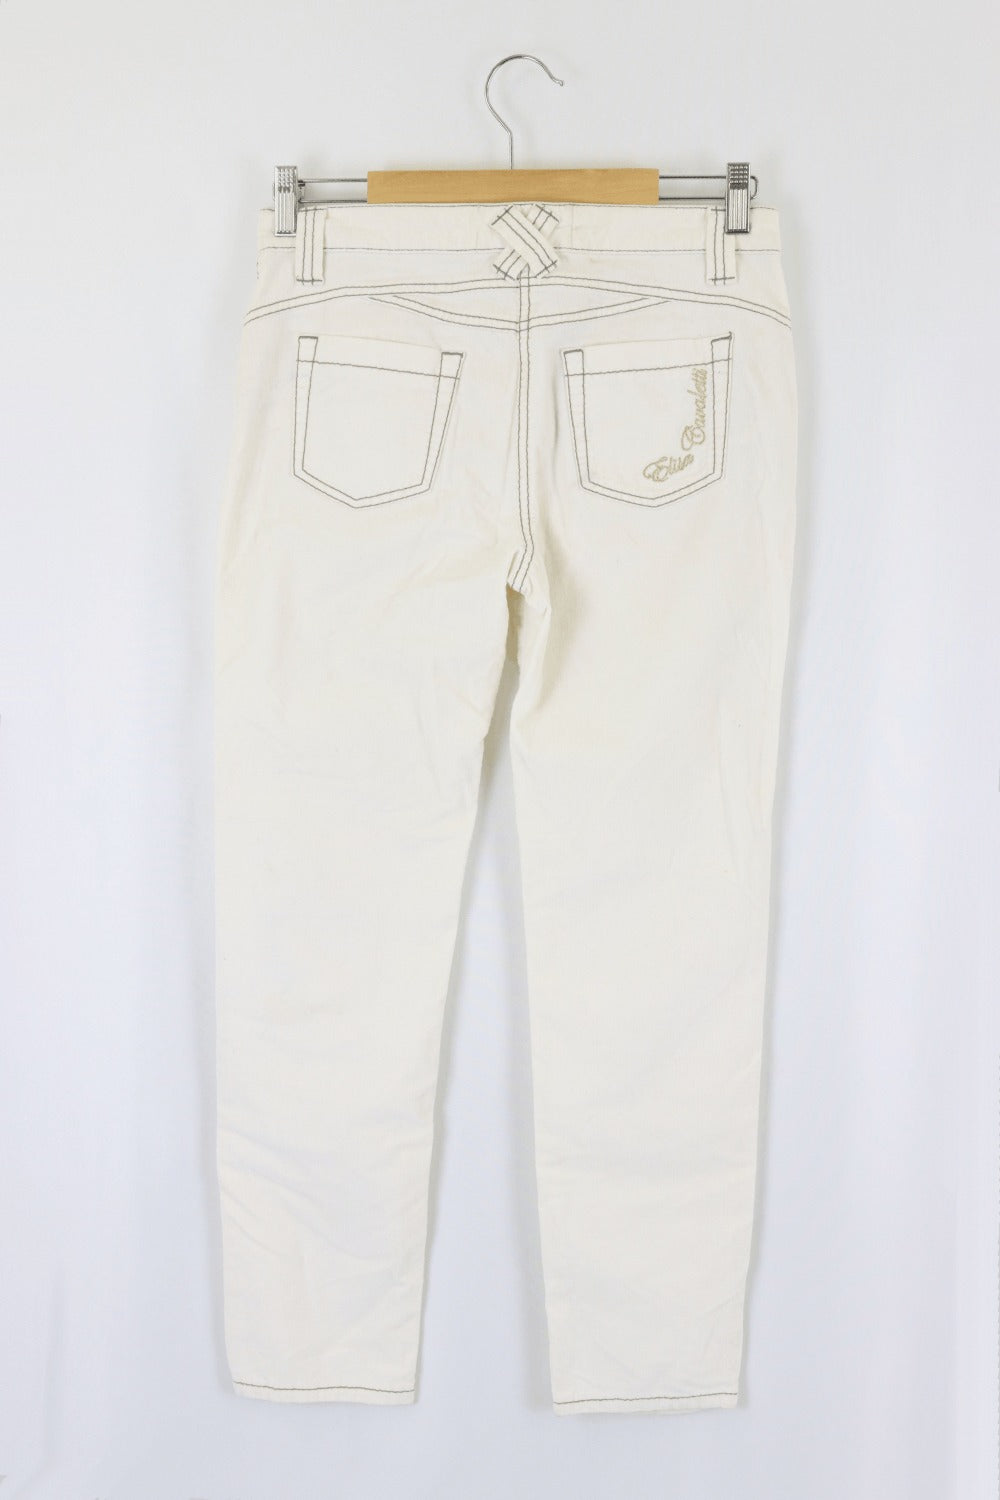 Elisa Cavaletti White Jeans 27 (AU 8)